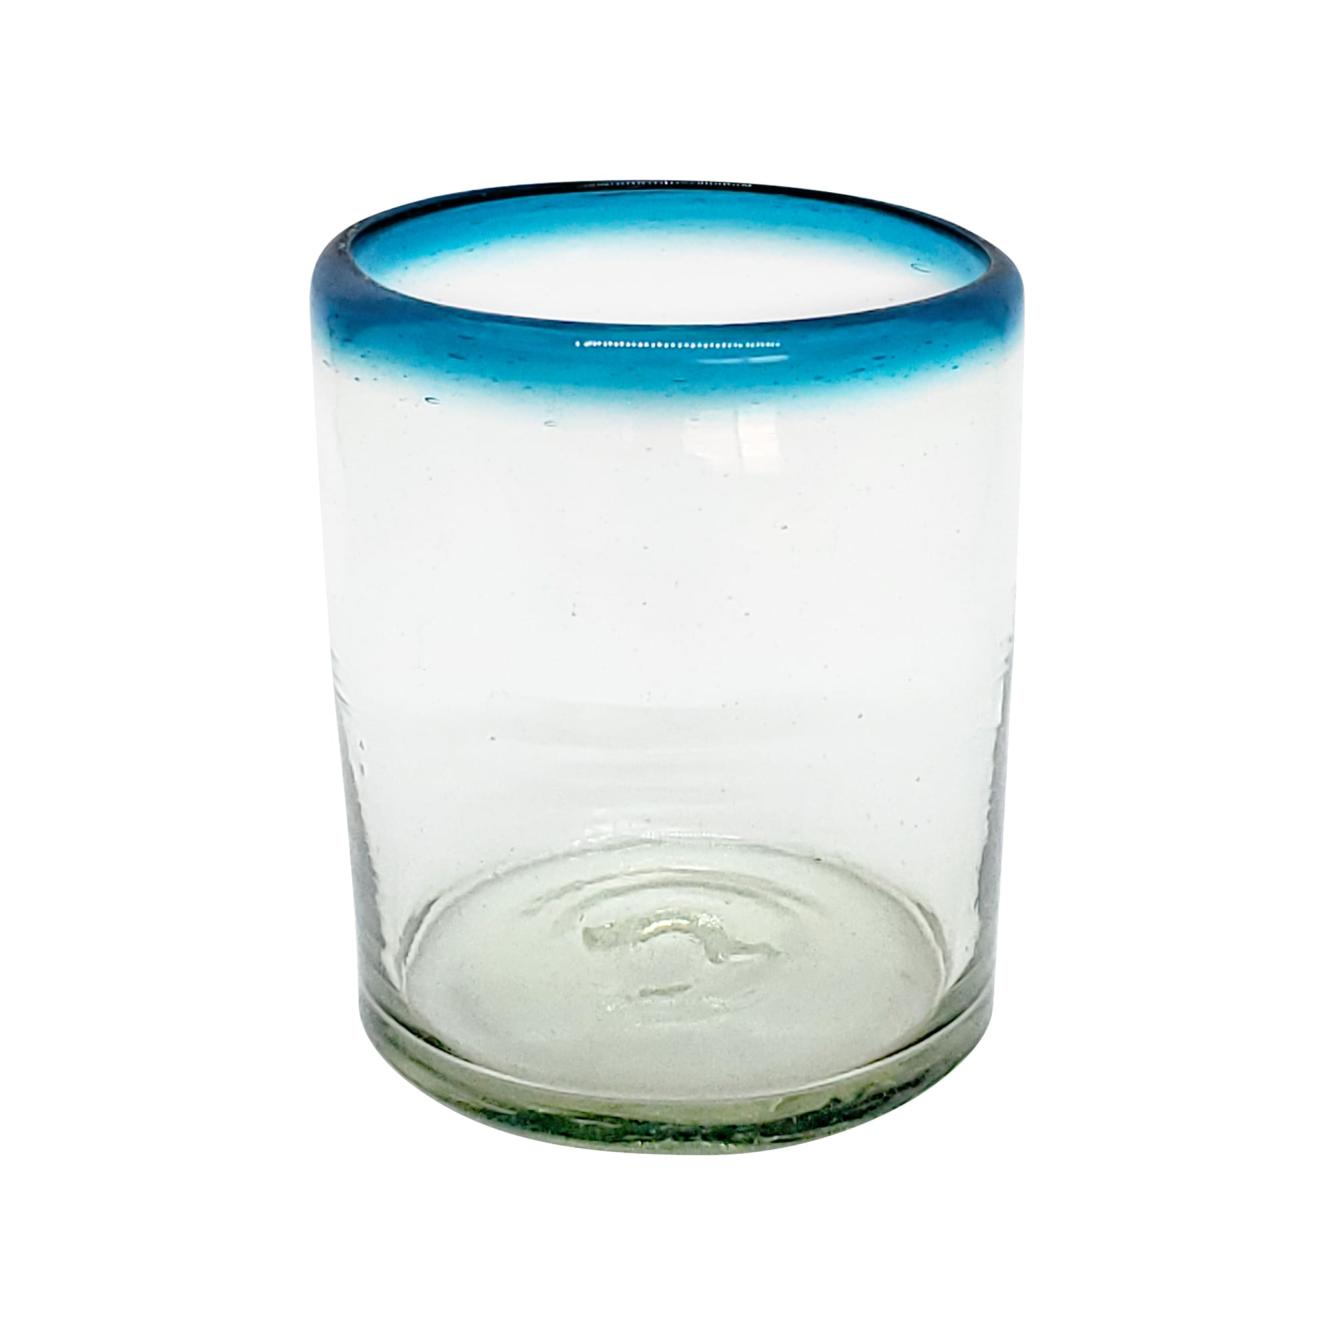 Novedades / Juego de 6 vasos chicos con borde azul aqua, 10 oz, Vidrio Reciclado, Libre de Plomo y Toxinas / stos vasos chicos son un gran complemento para su juego de jarra y vasos grandes.